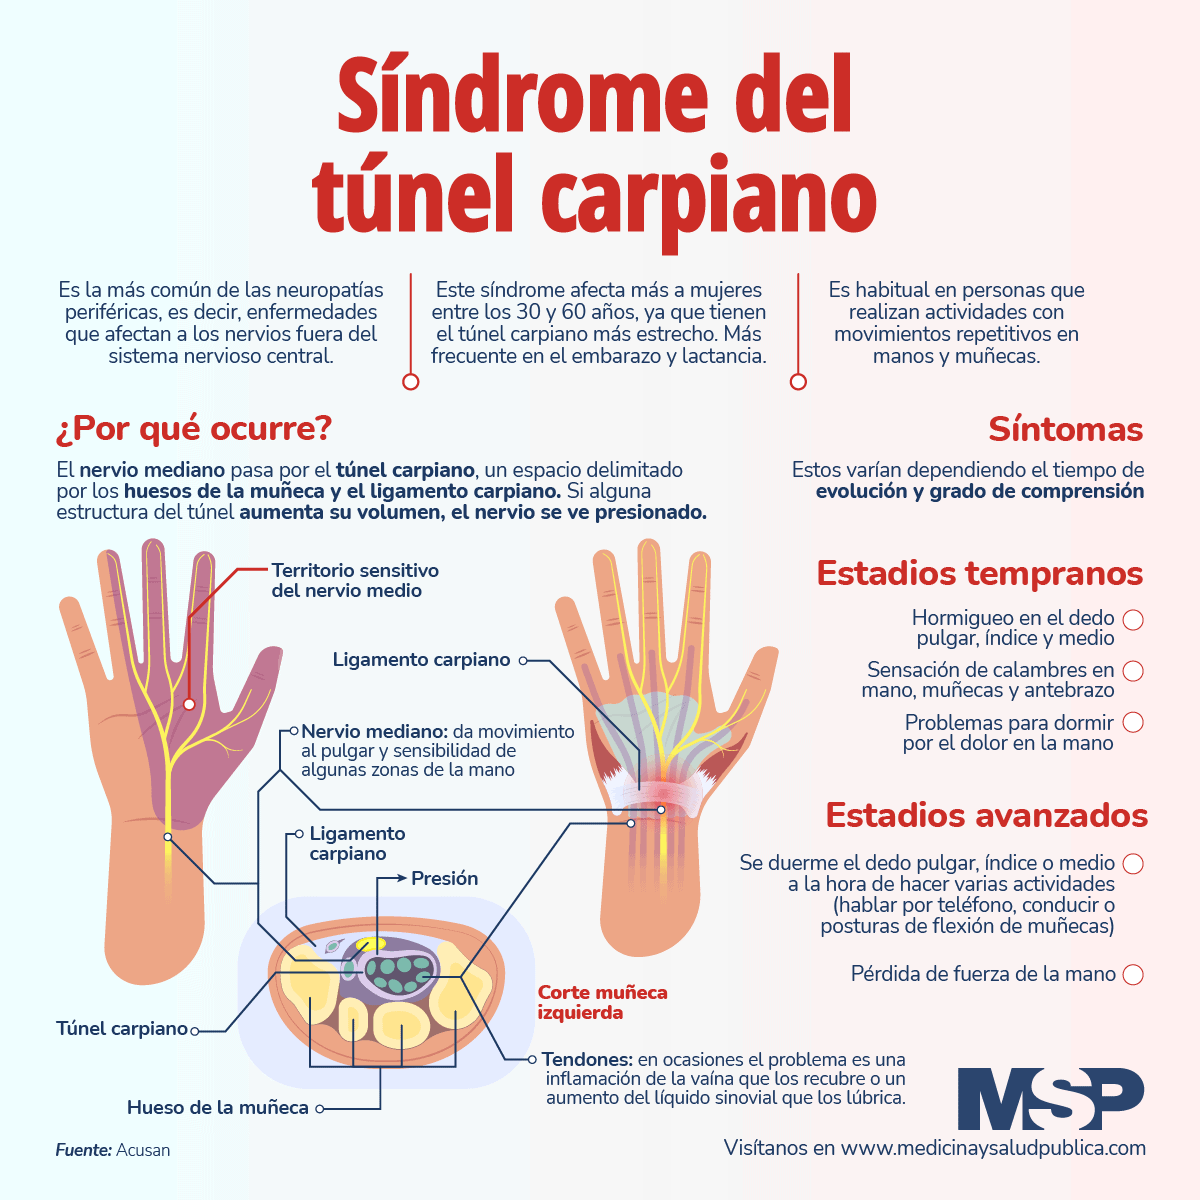 Cuándo se presenta el síndrome del Túnel Carpiano?